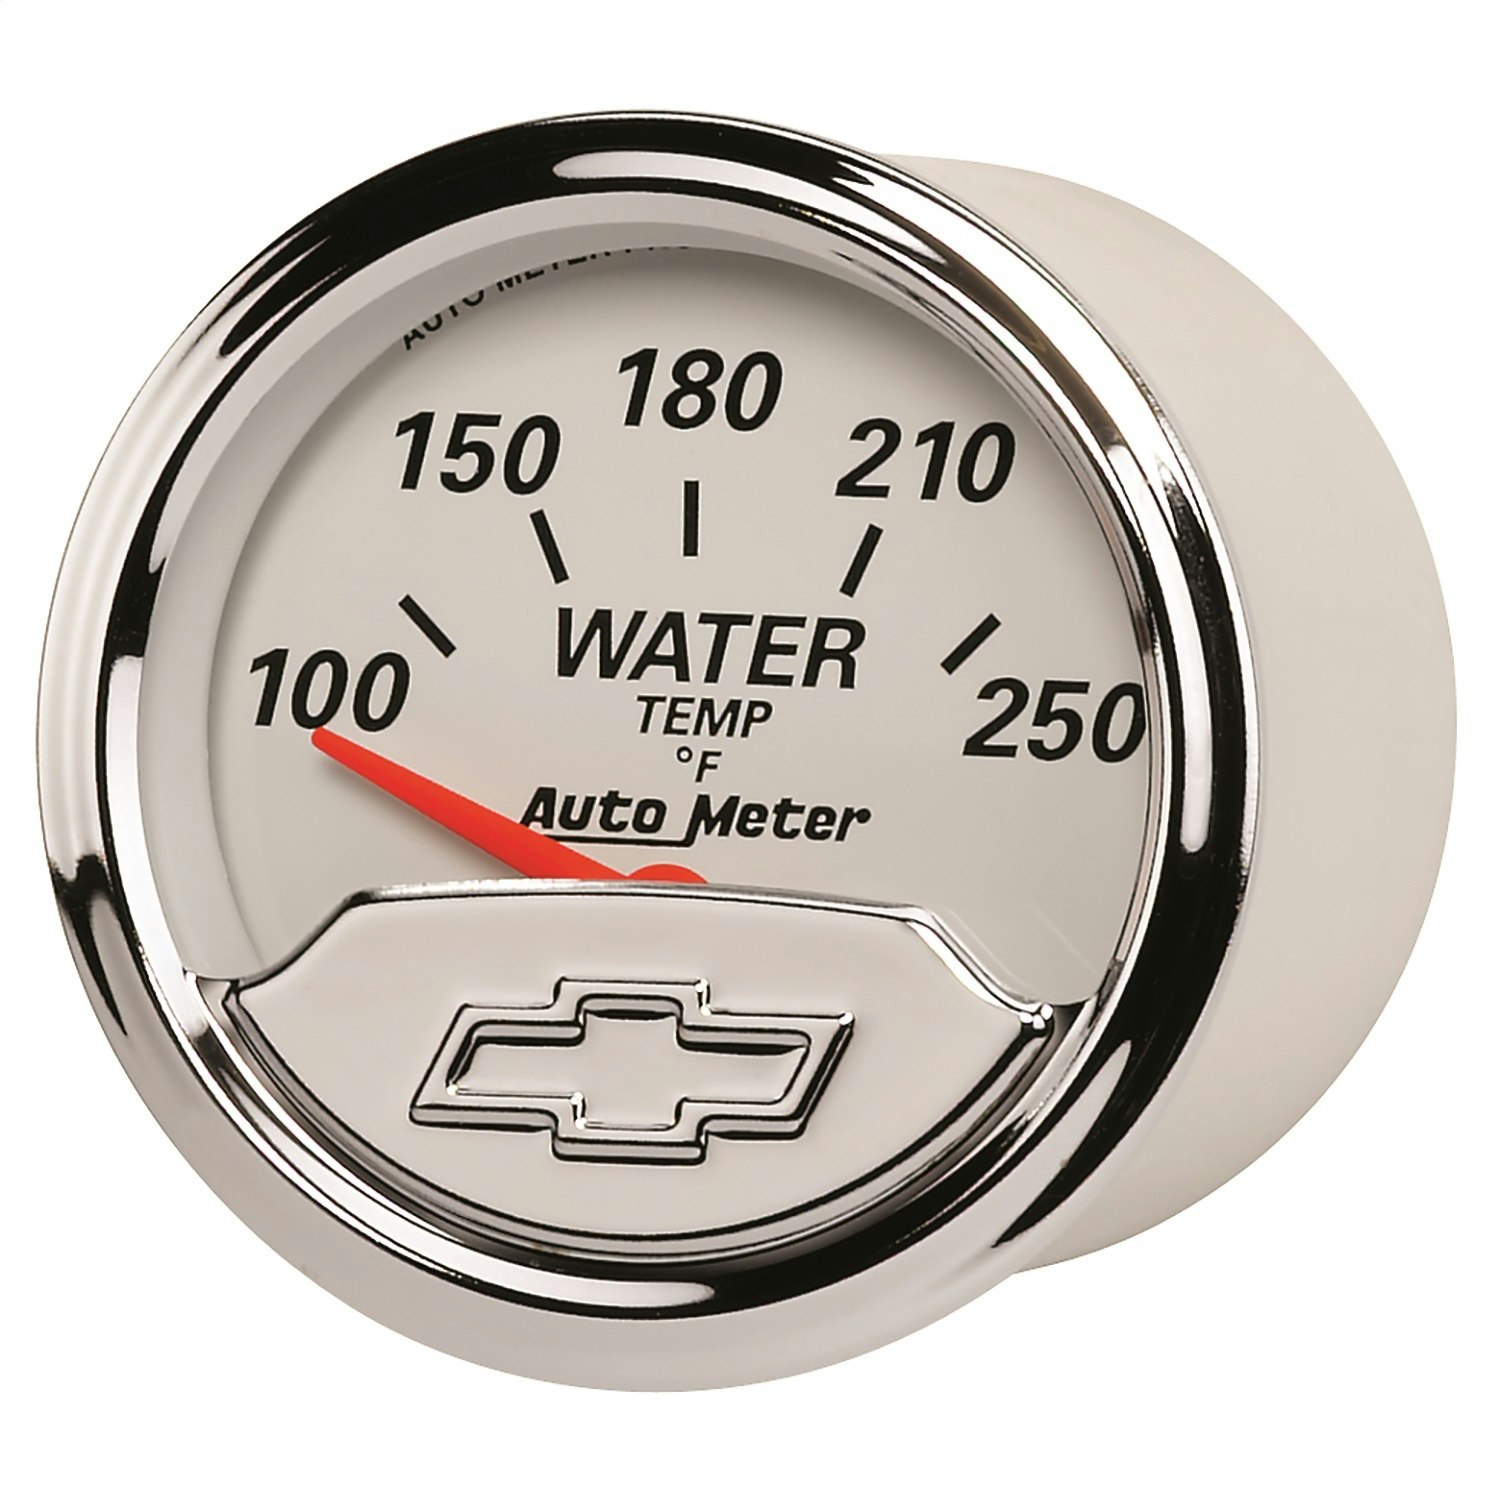 Auto Meter 1337 Water Temperature Gauge